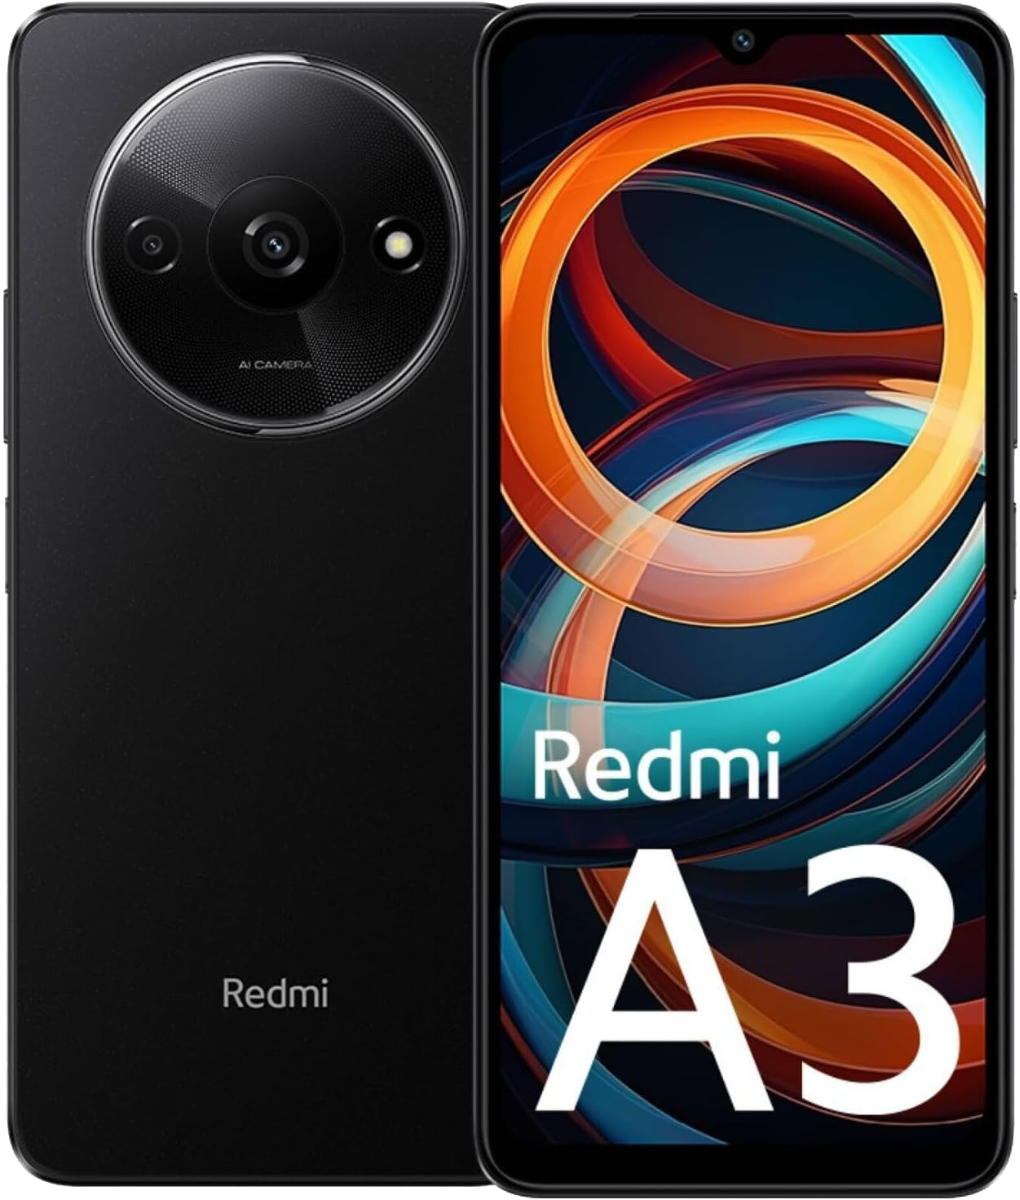 Xiaomi Redmi a3 64 gb + 3 gb black no brand eu